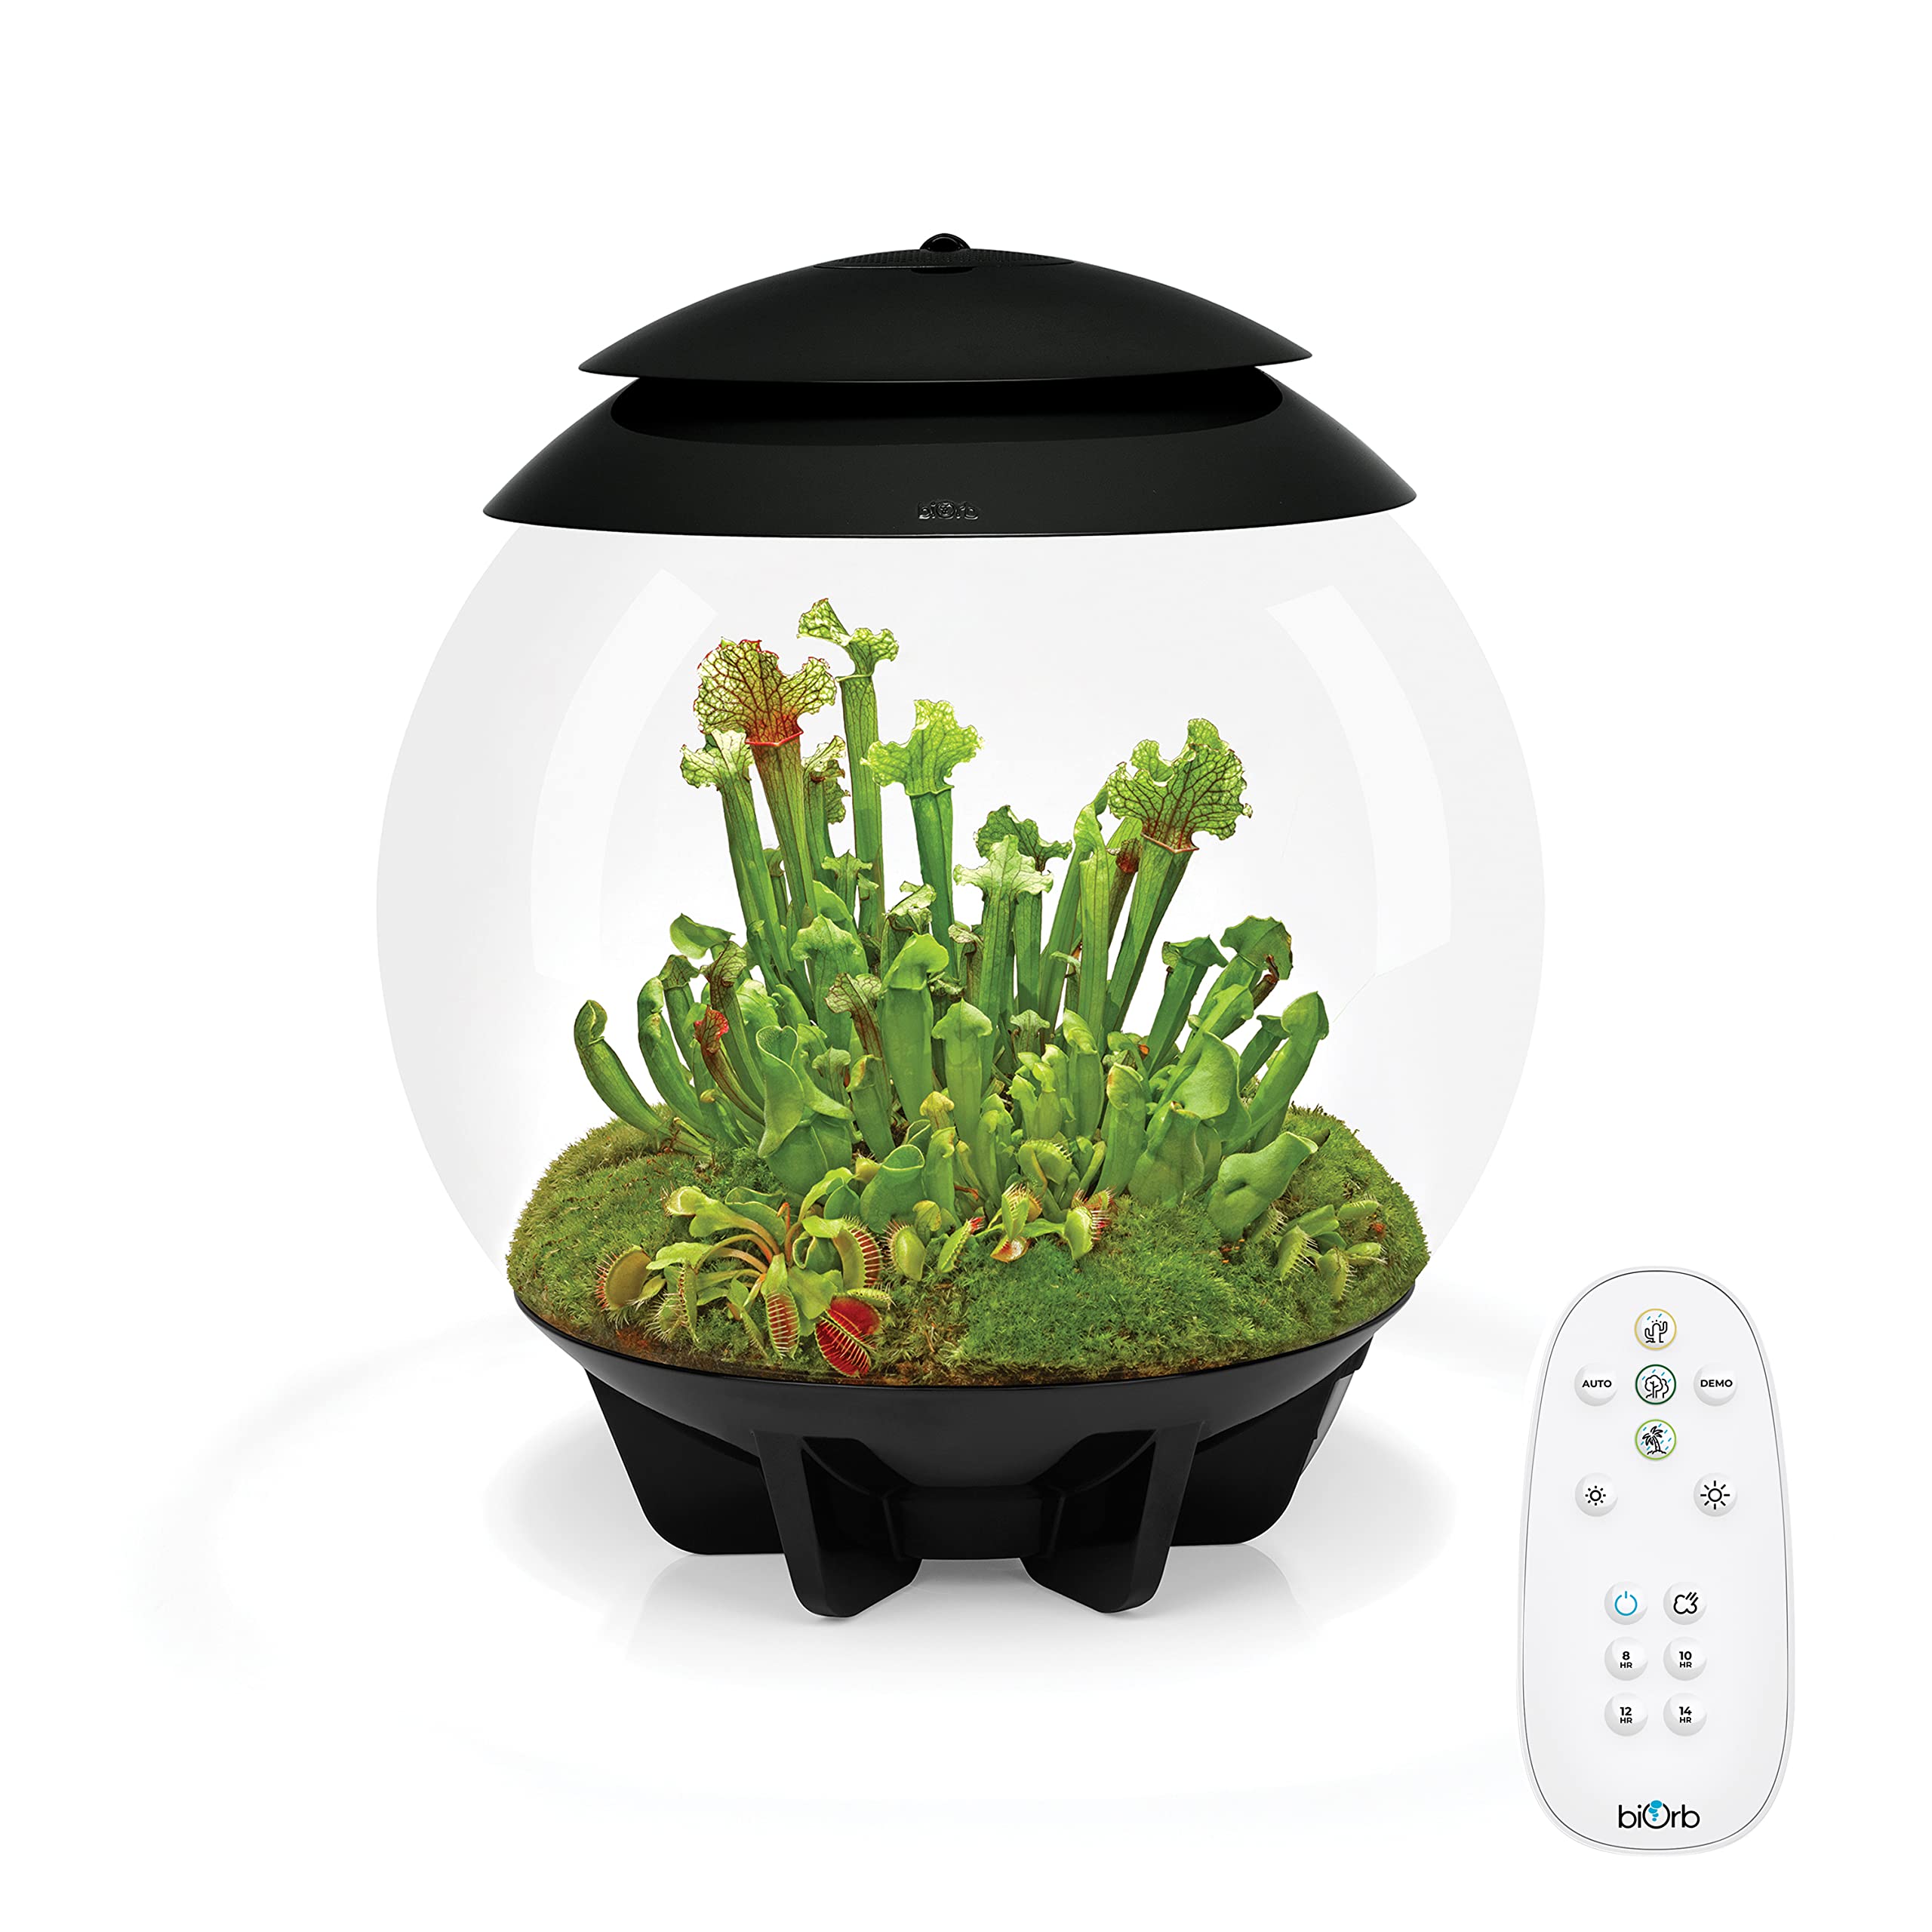 biOrb AIR 30 schwarz - Terrarium mit LED-Beleuchtung / Acryl-Becken zur Pflanzenpflege / für empfindliche, exotische Pflanzen